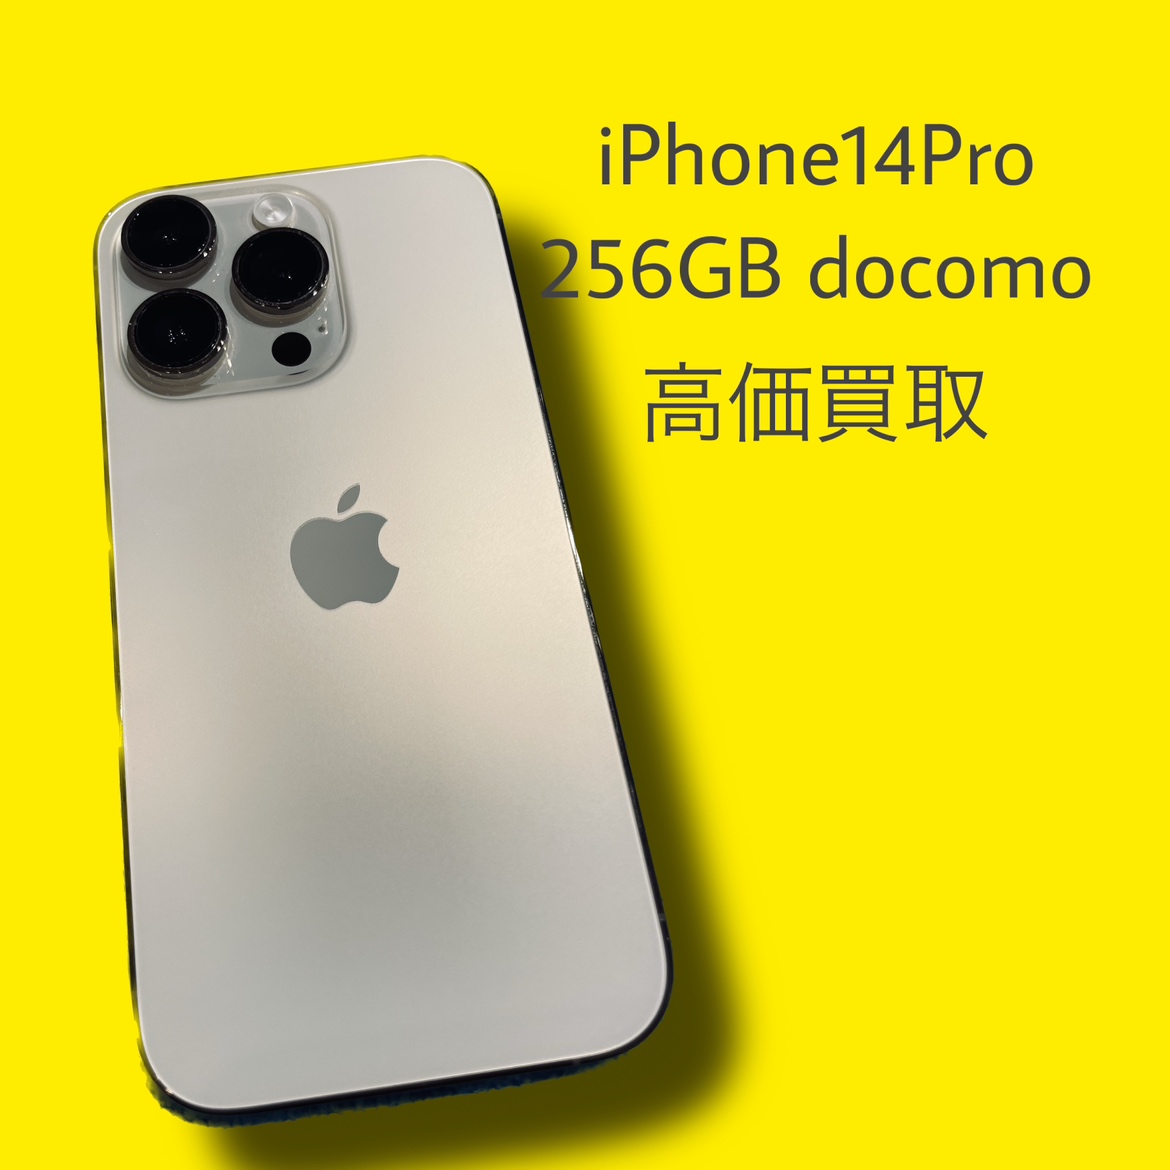 iPhone14Pro 256GB docomo〇【天神地下街店】